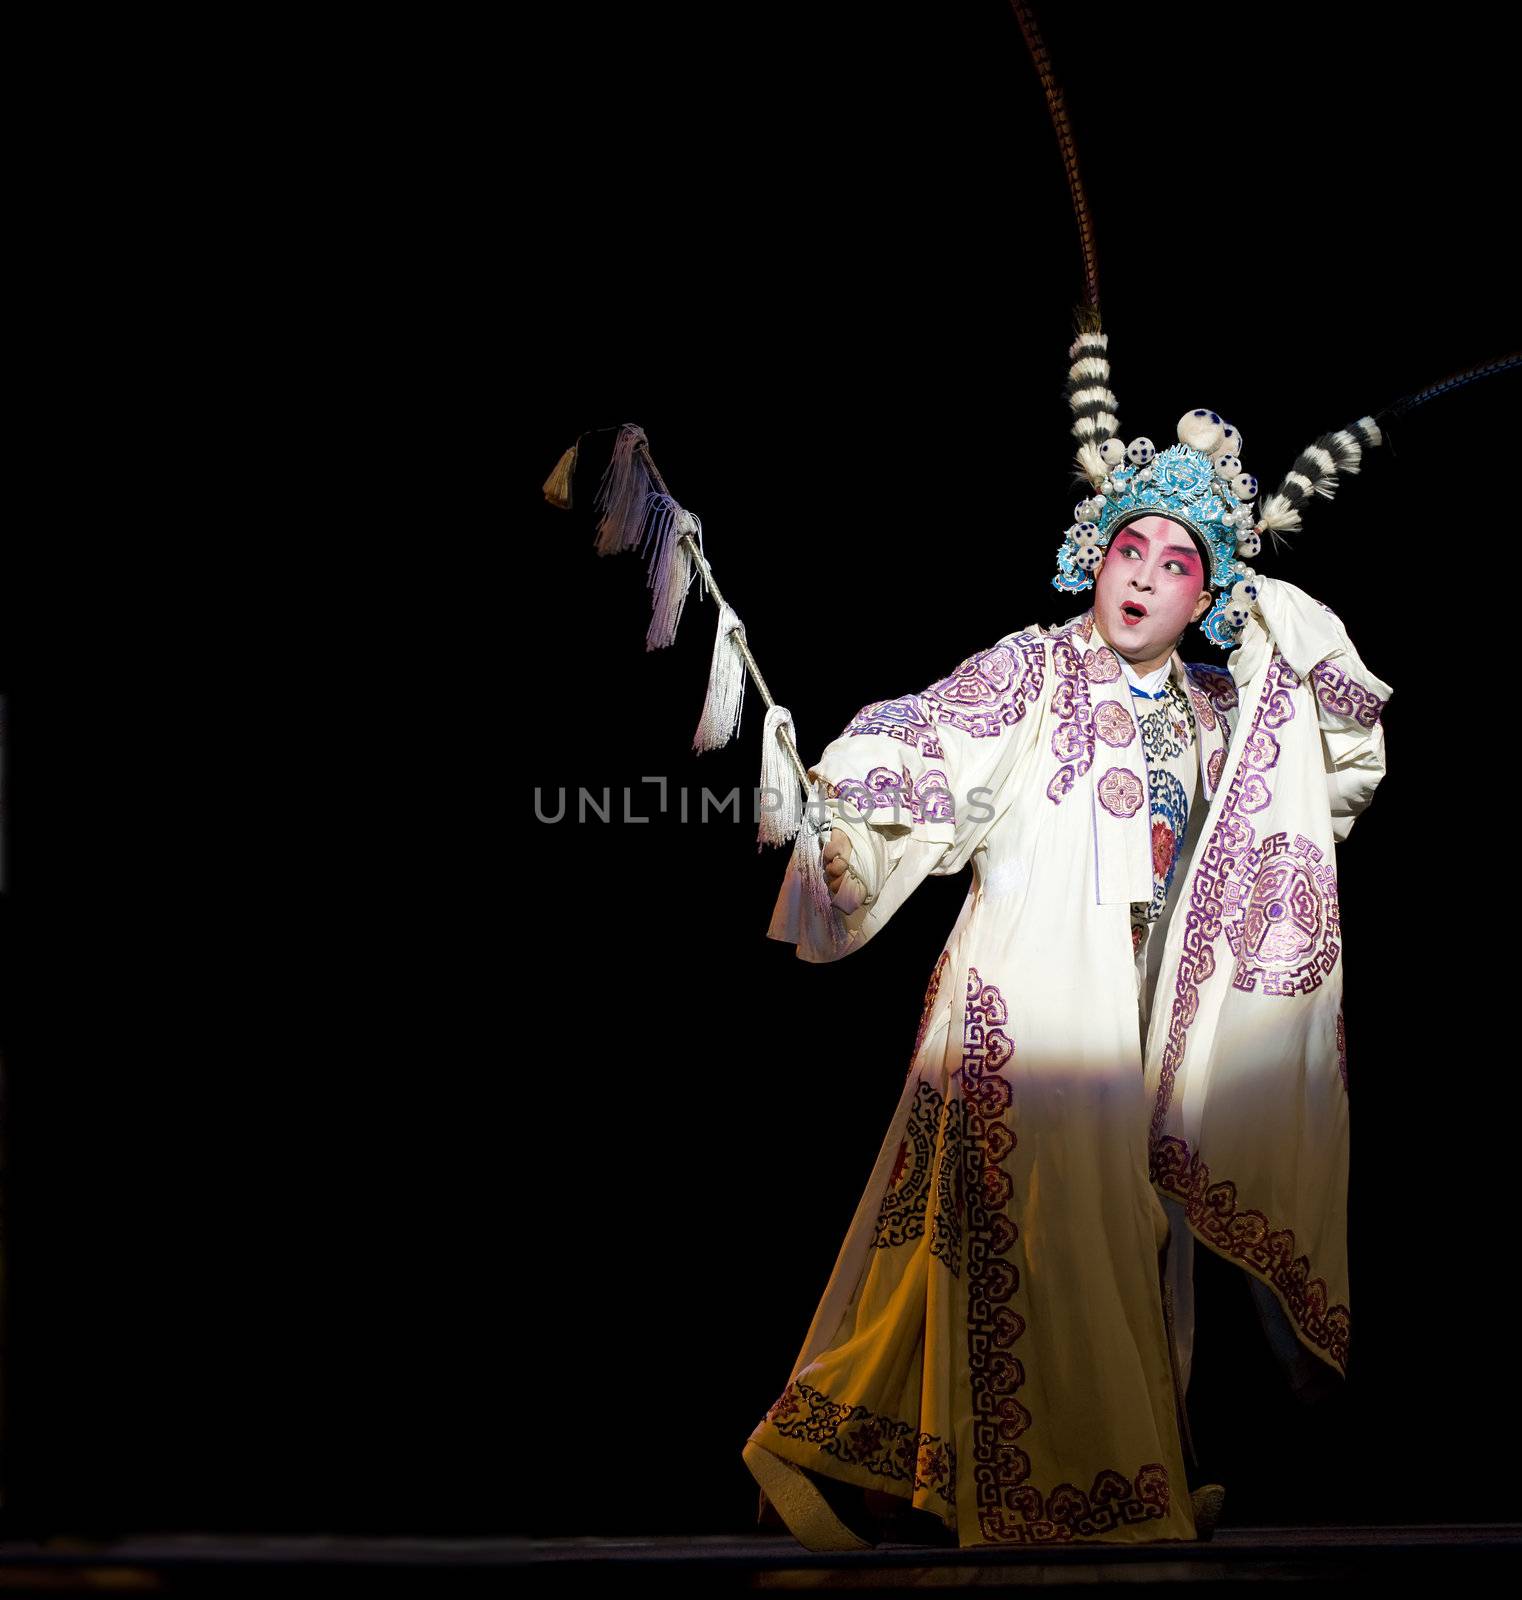 CHENGDU - OCT 26: Zhejiang Kunqu Opera theater perform Gongshunzidu at Jinsha theater.OCT 26, 2008 in Chengdu, China.
The leading role is the famous opera actor Lin Weilin.